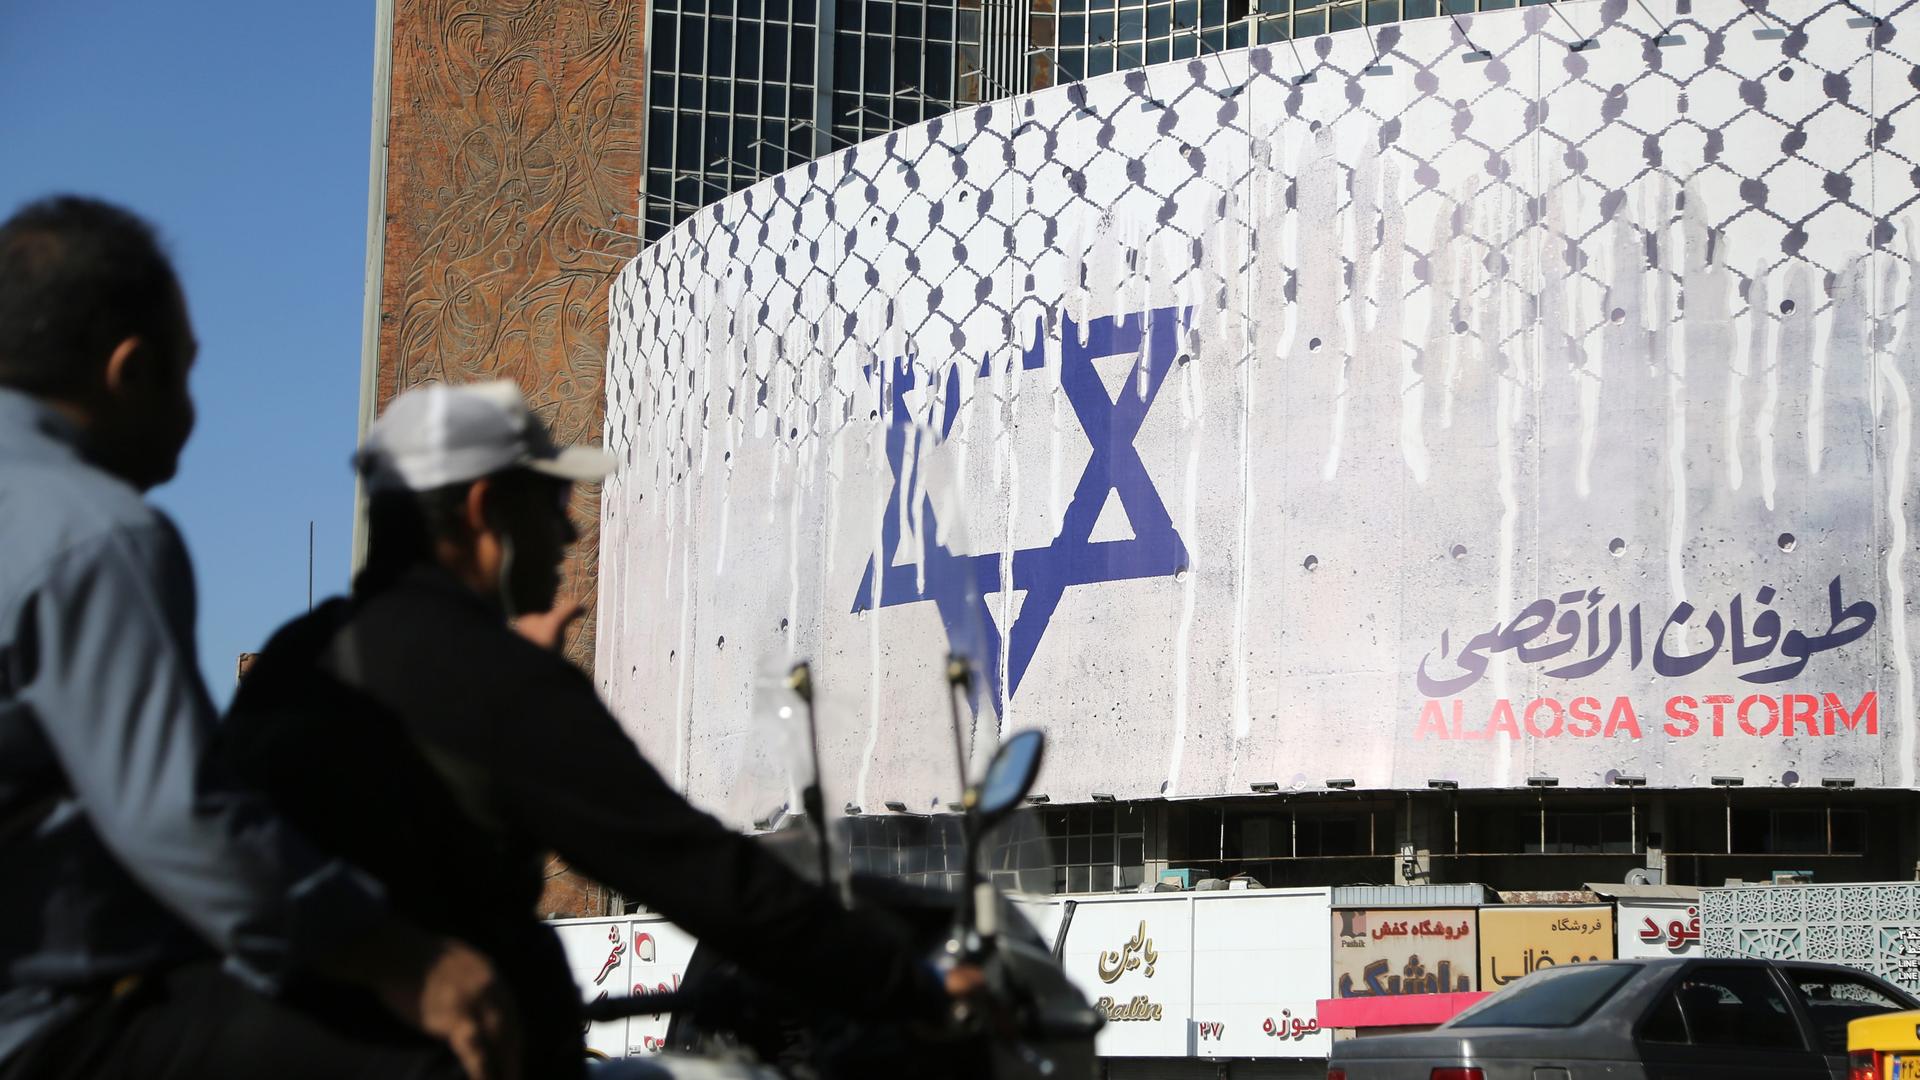 Auf der weißen Fassade eines halbrunden Gebäudes hängt ein Plakat mit dem Davidstern und der Aufschrift "Aqsa Flut" (Übersetzung).